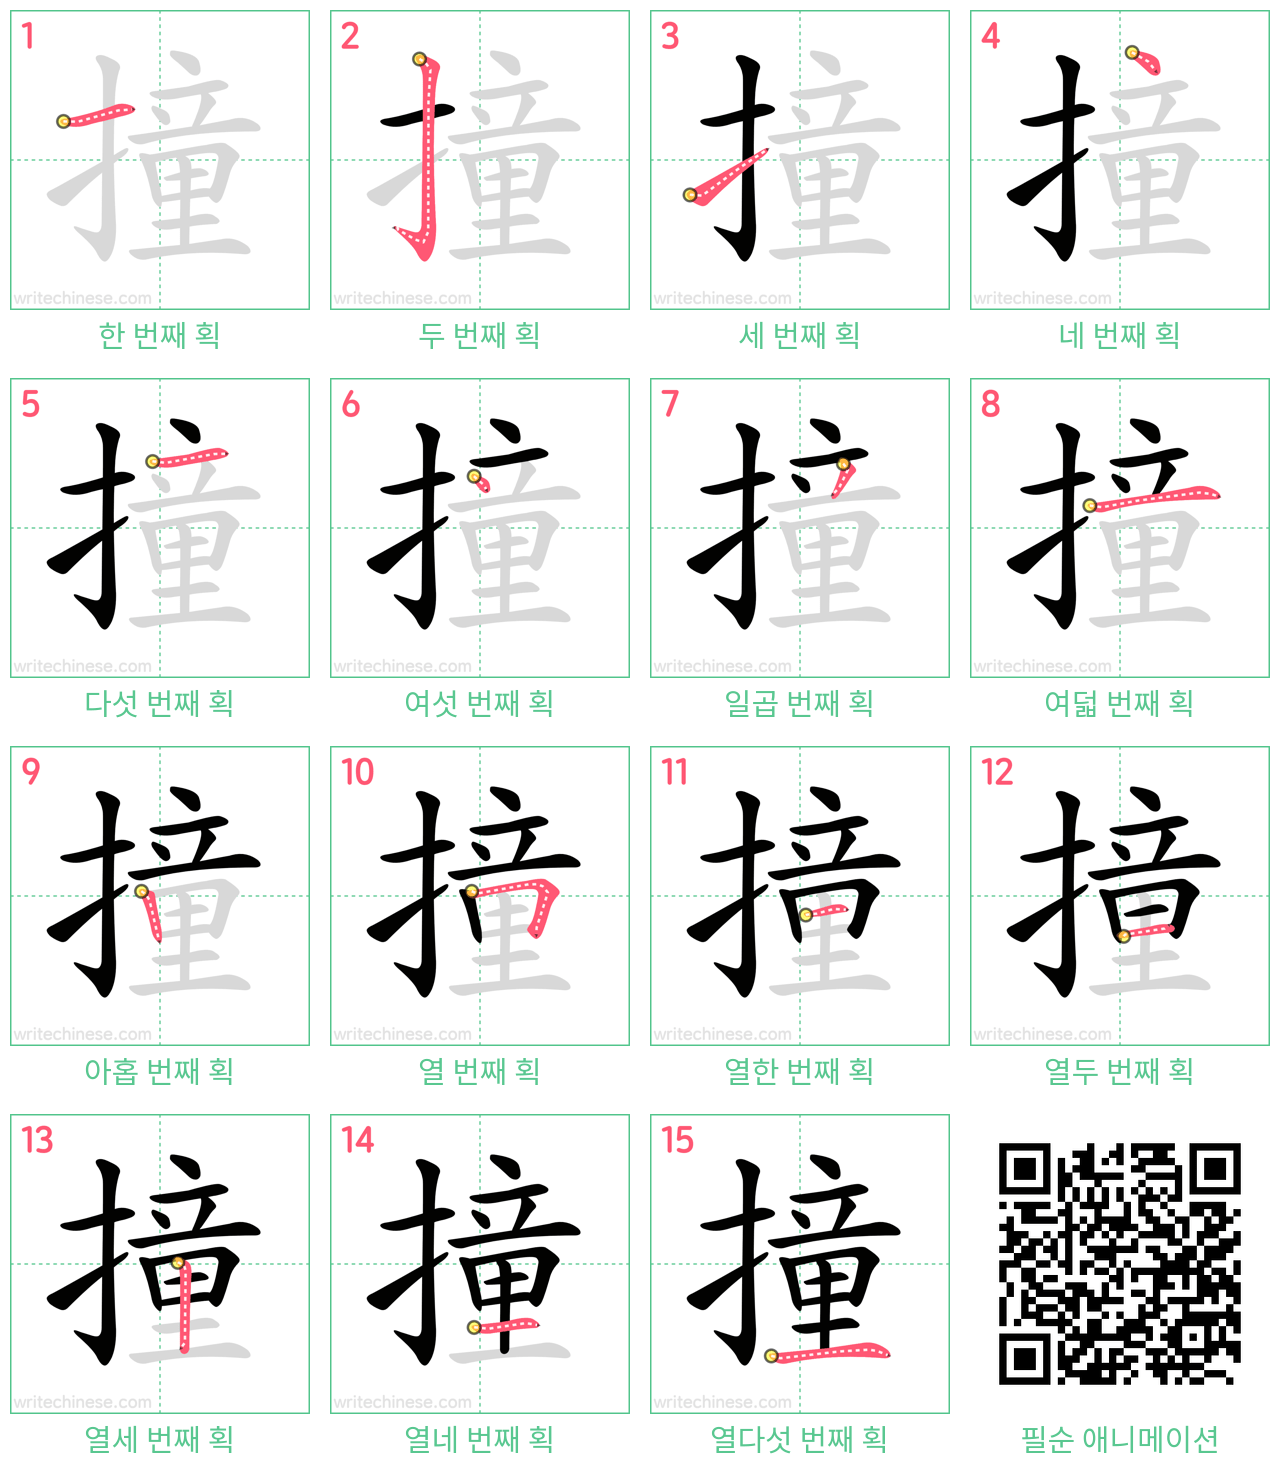 撞 step-by-step stroke order diagrams